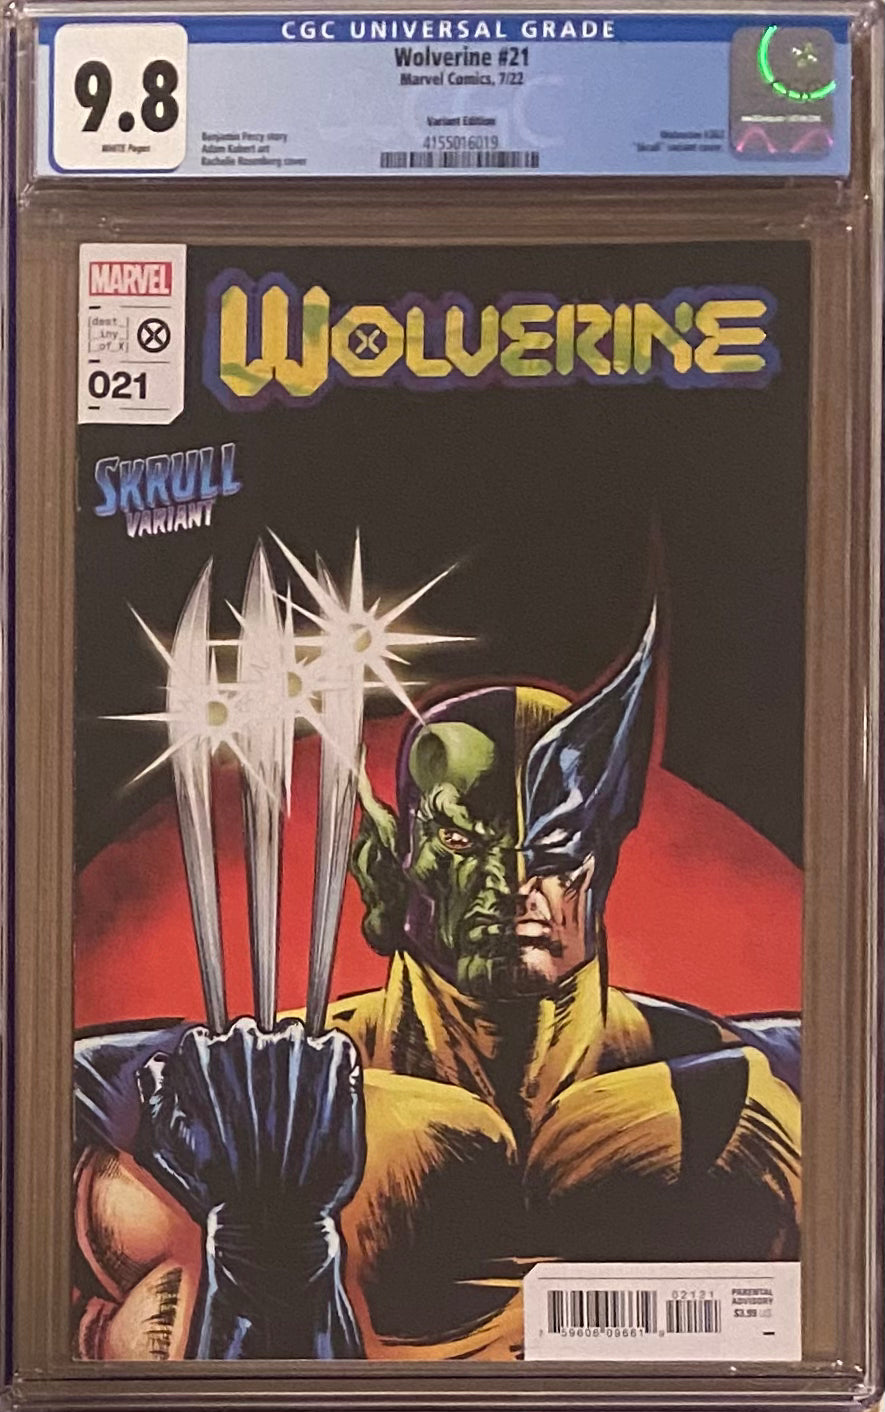 Wolverine #21 Von Eeden Variant CGC 9.8